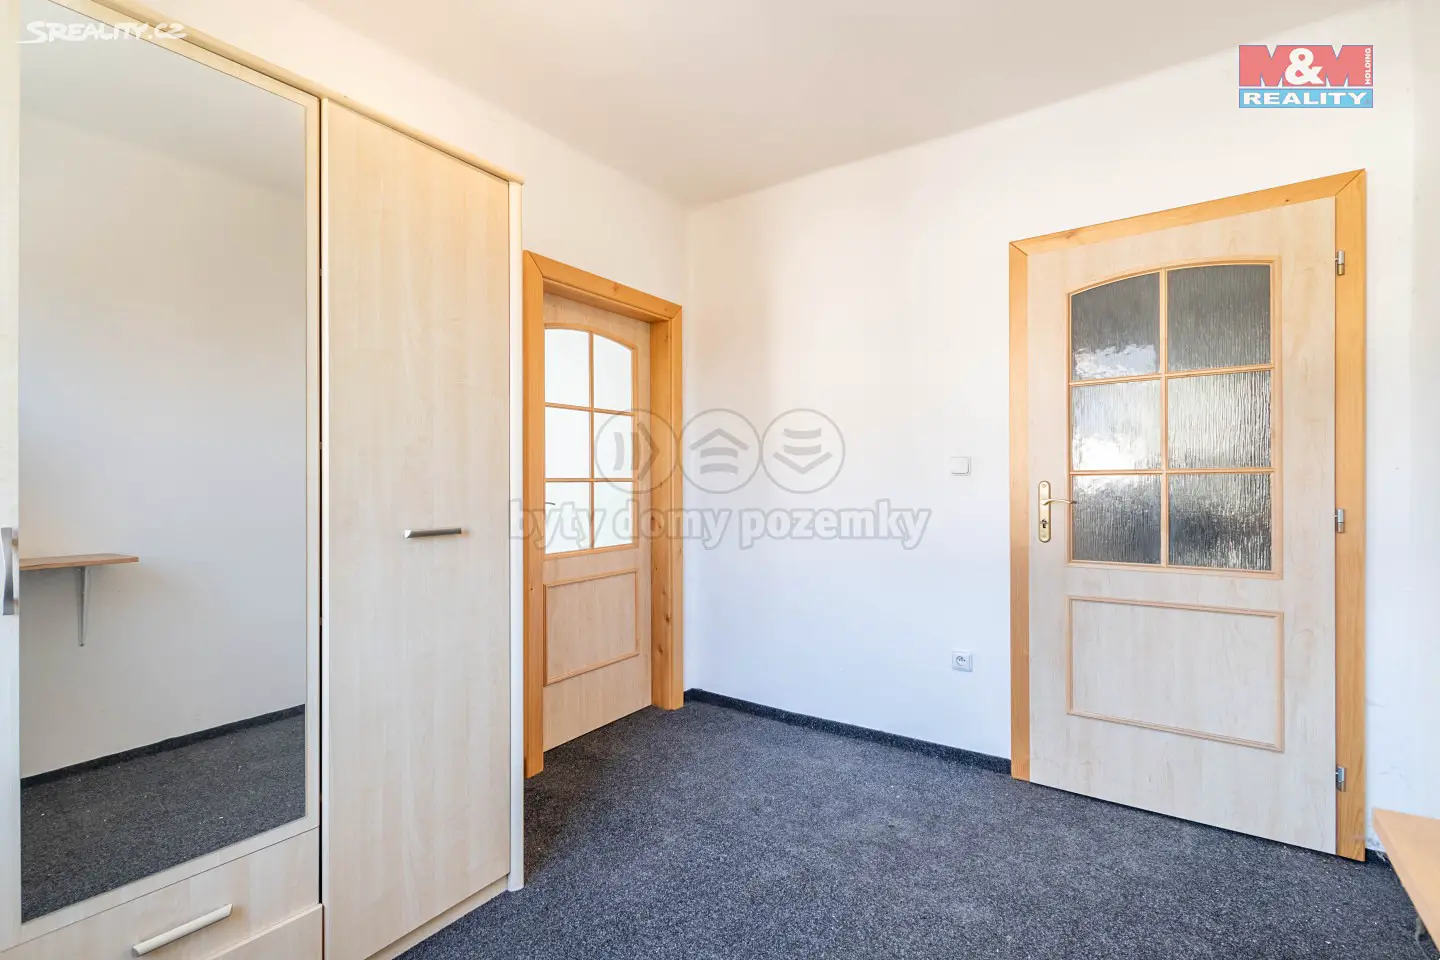 Prodej bytu 4+kk 80 m², Konojedy, okres Praha-východ